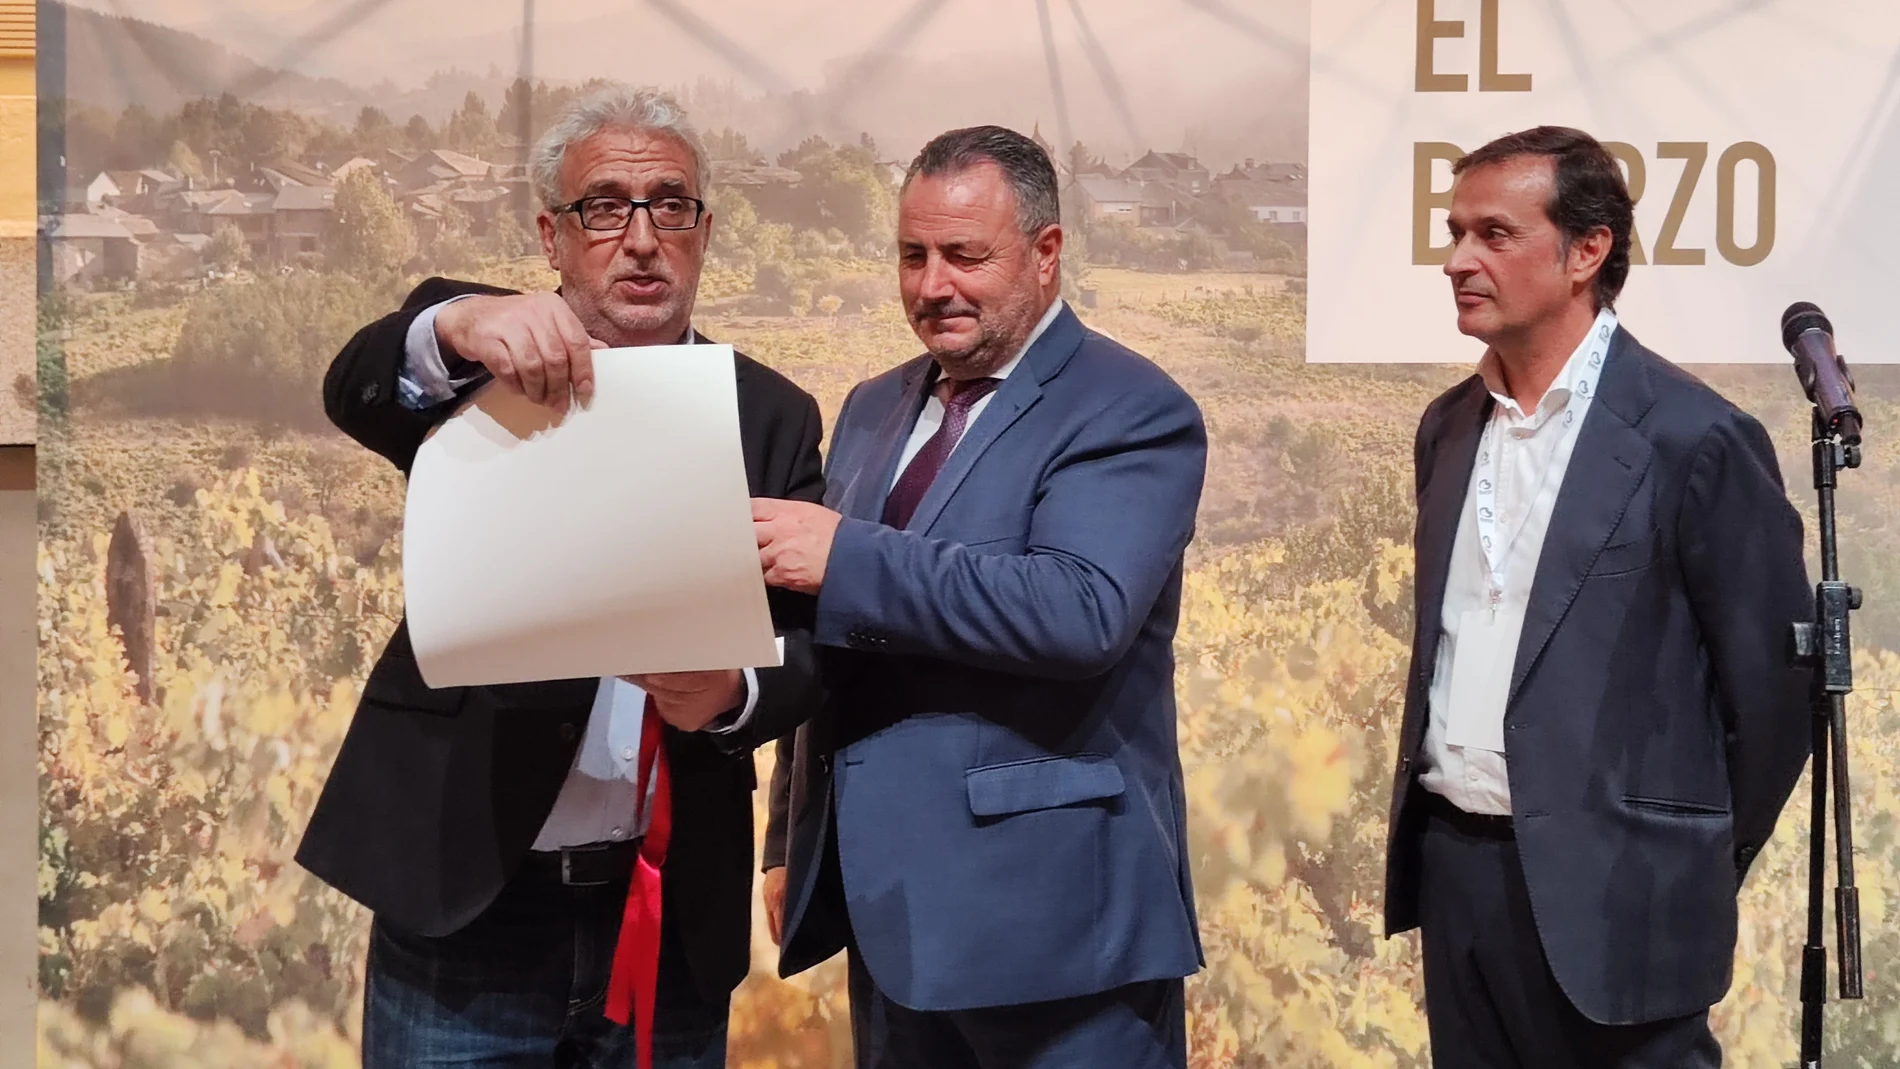 El presidente de la Diputación de León, Eduardo Morán, entrega el reconocimiento como embajador de los vinos de El Bierzo al cómico Leo Harlem